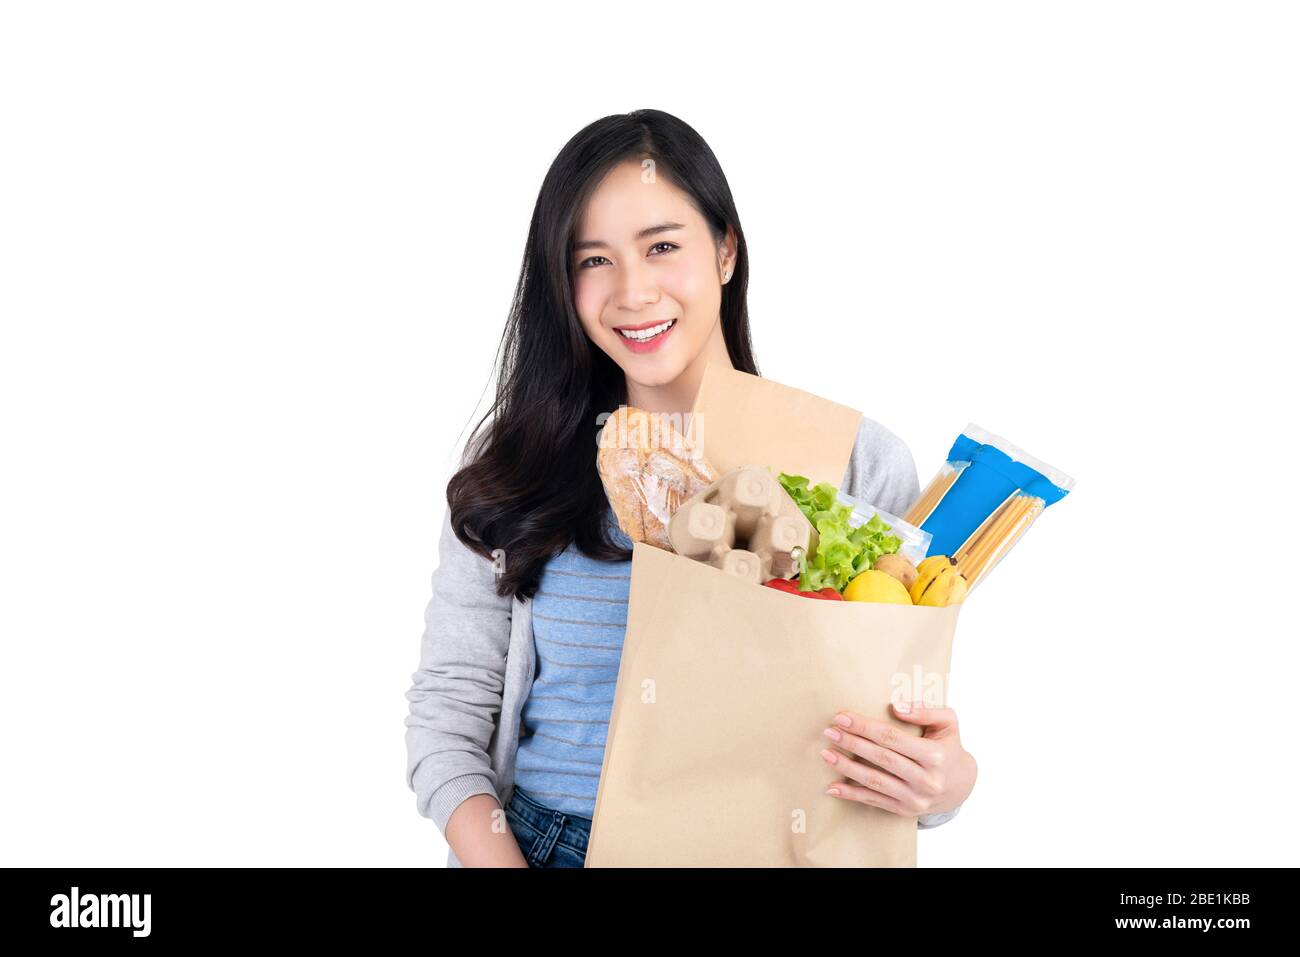 Schöne lächelnde asiatische Frau hält Papier Einkaufstasche voller Lebensmittel und Lebensmittel isoliert auf weißem Hintergrund Stockfoto